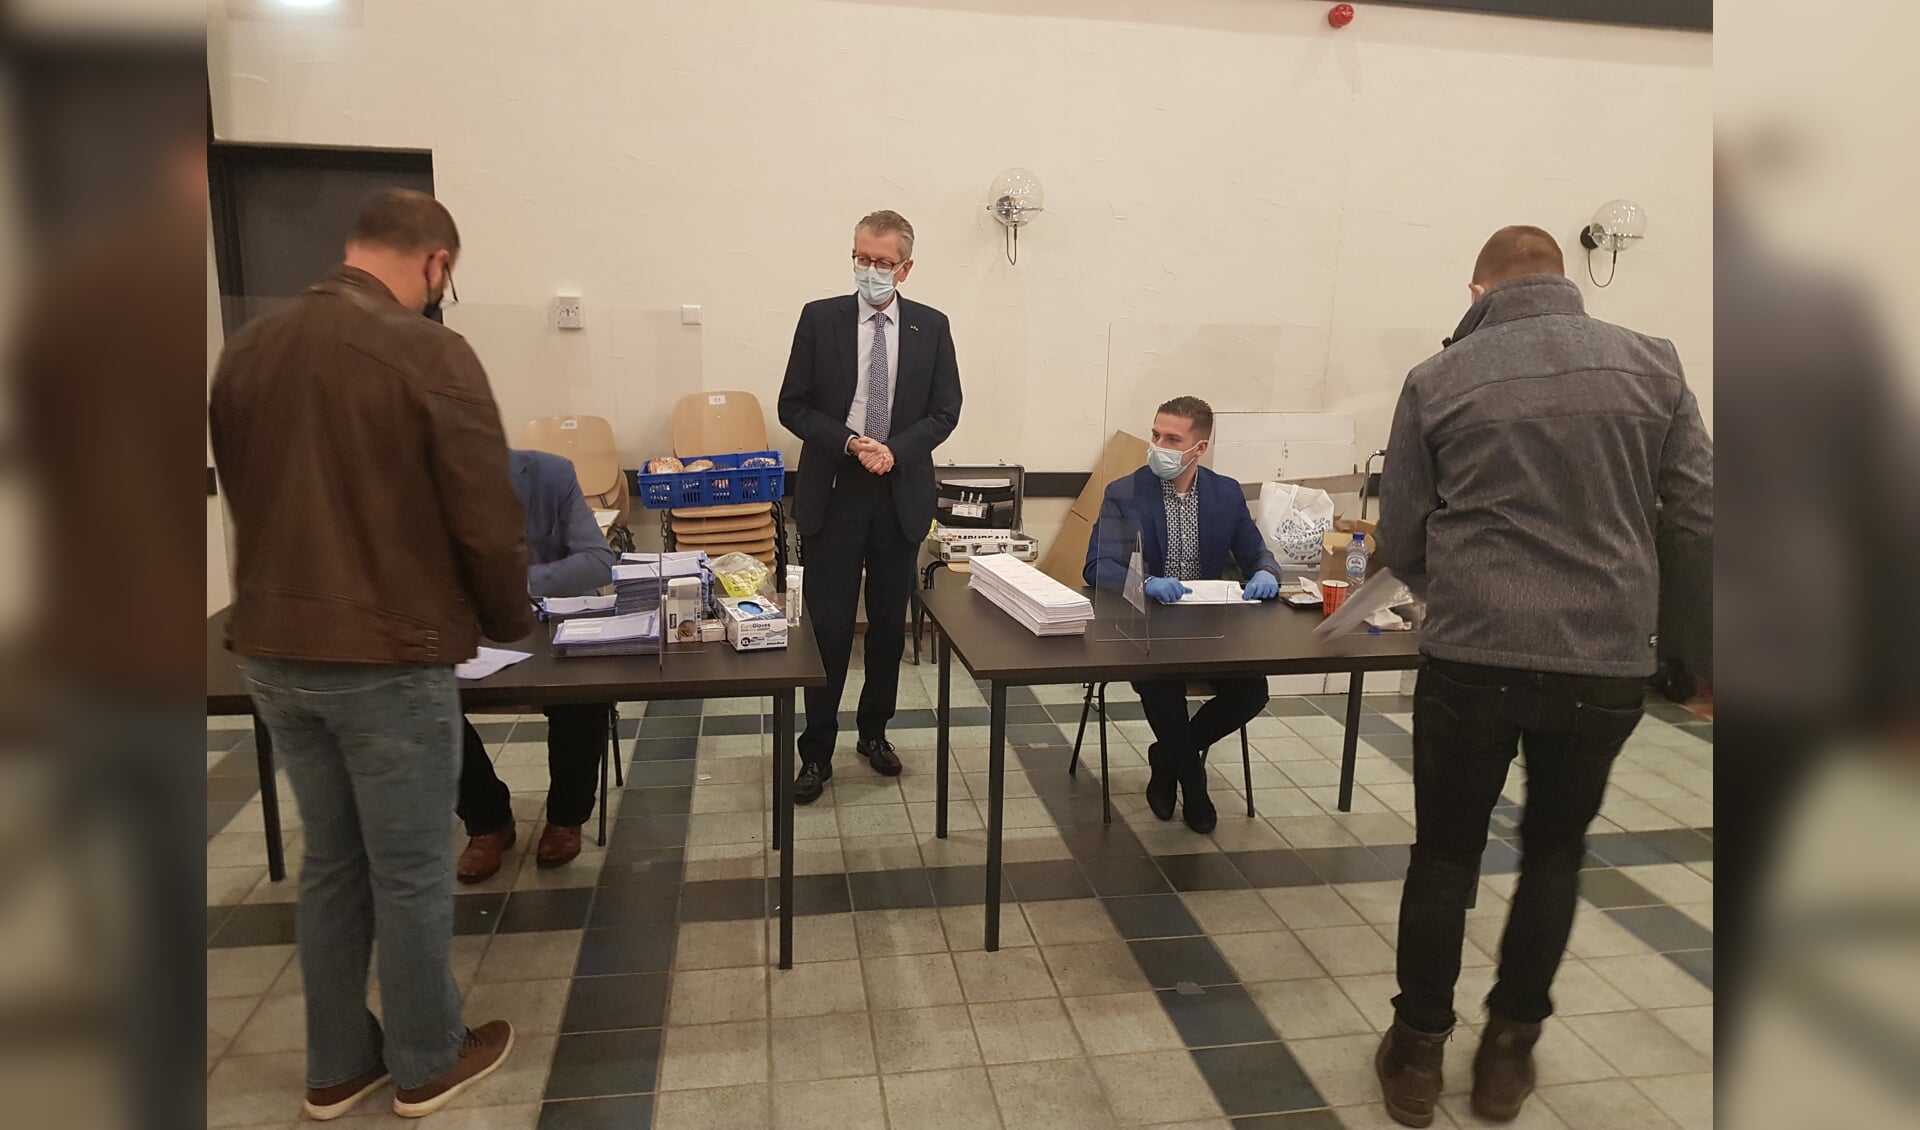 Burgemeester Gerrit Jan Gorter bij het stembureau in Open Haven